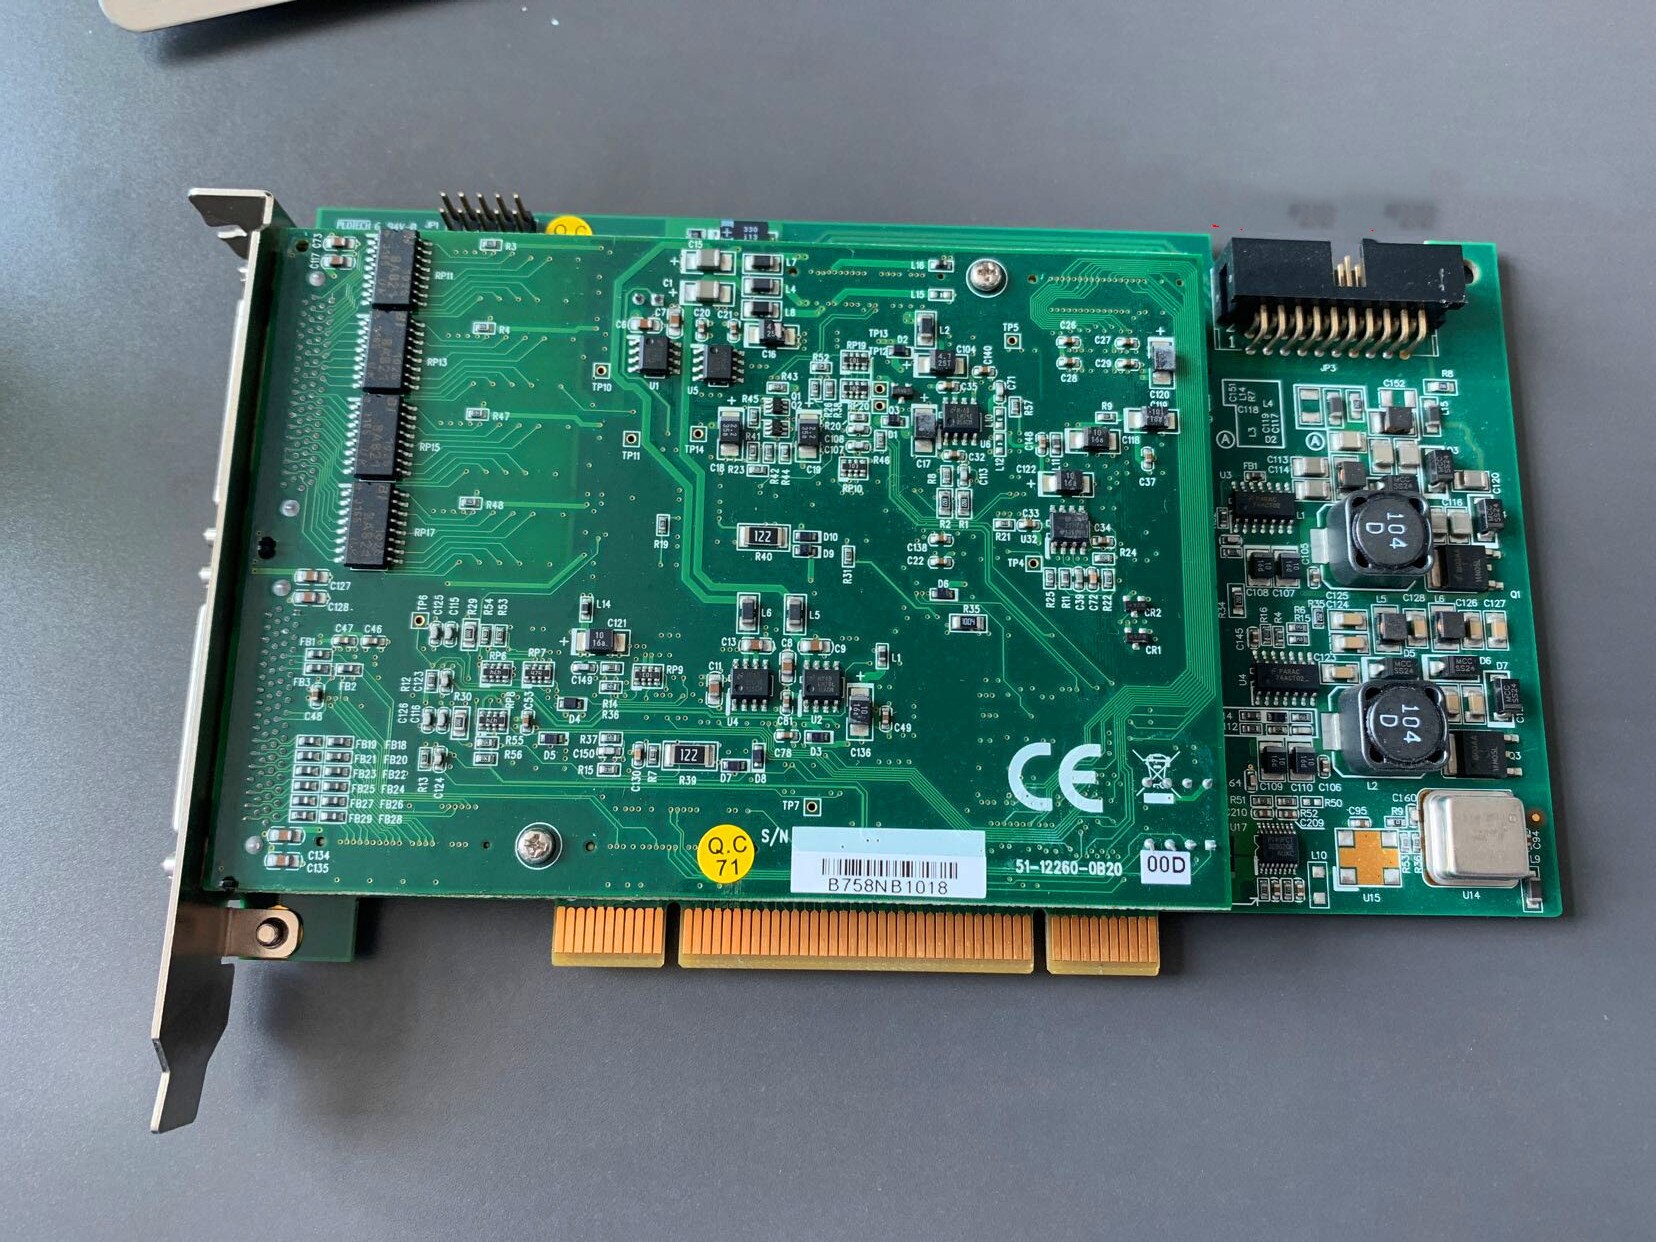    DAQ-2206(G)-01B0 PCI2A000CB 51-20000-0B..